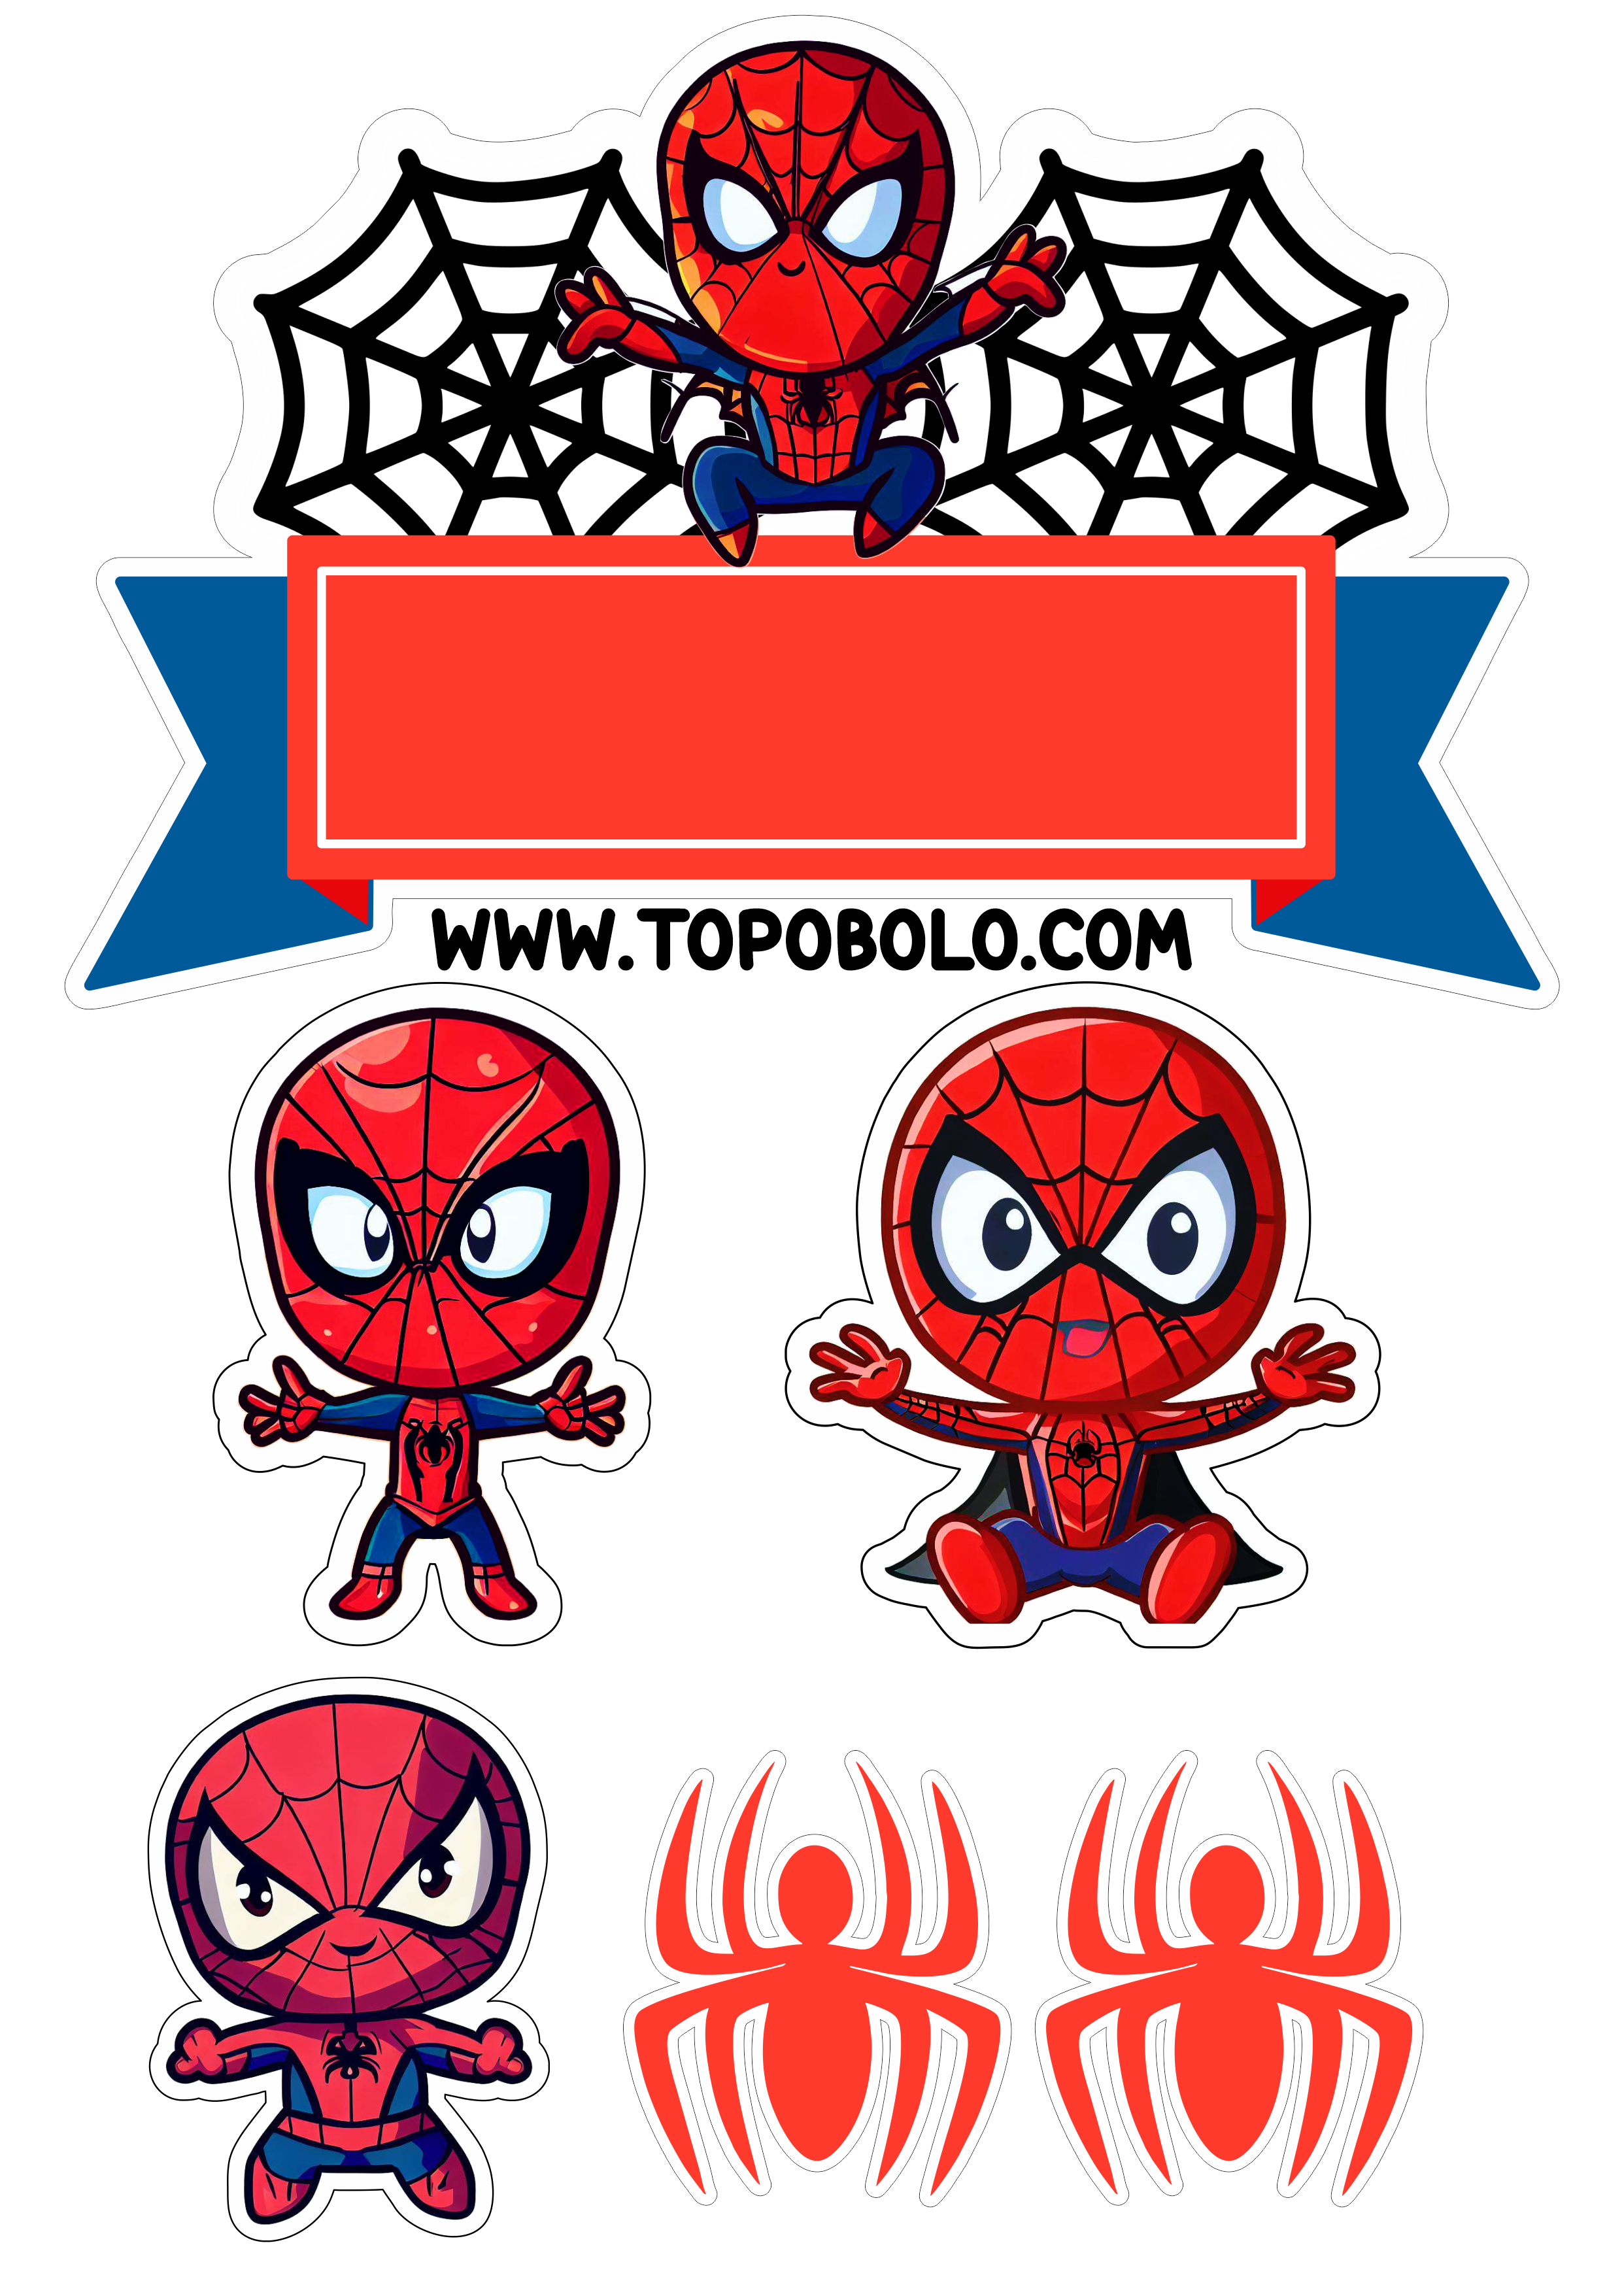 Homem-Aranha aniversário infantil Topo de bolo para imprimir Spider-Man cute chibi papelaria criativa festa pronta png